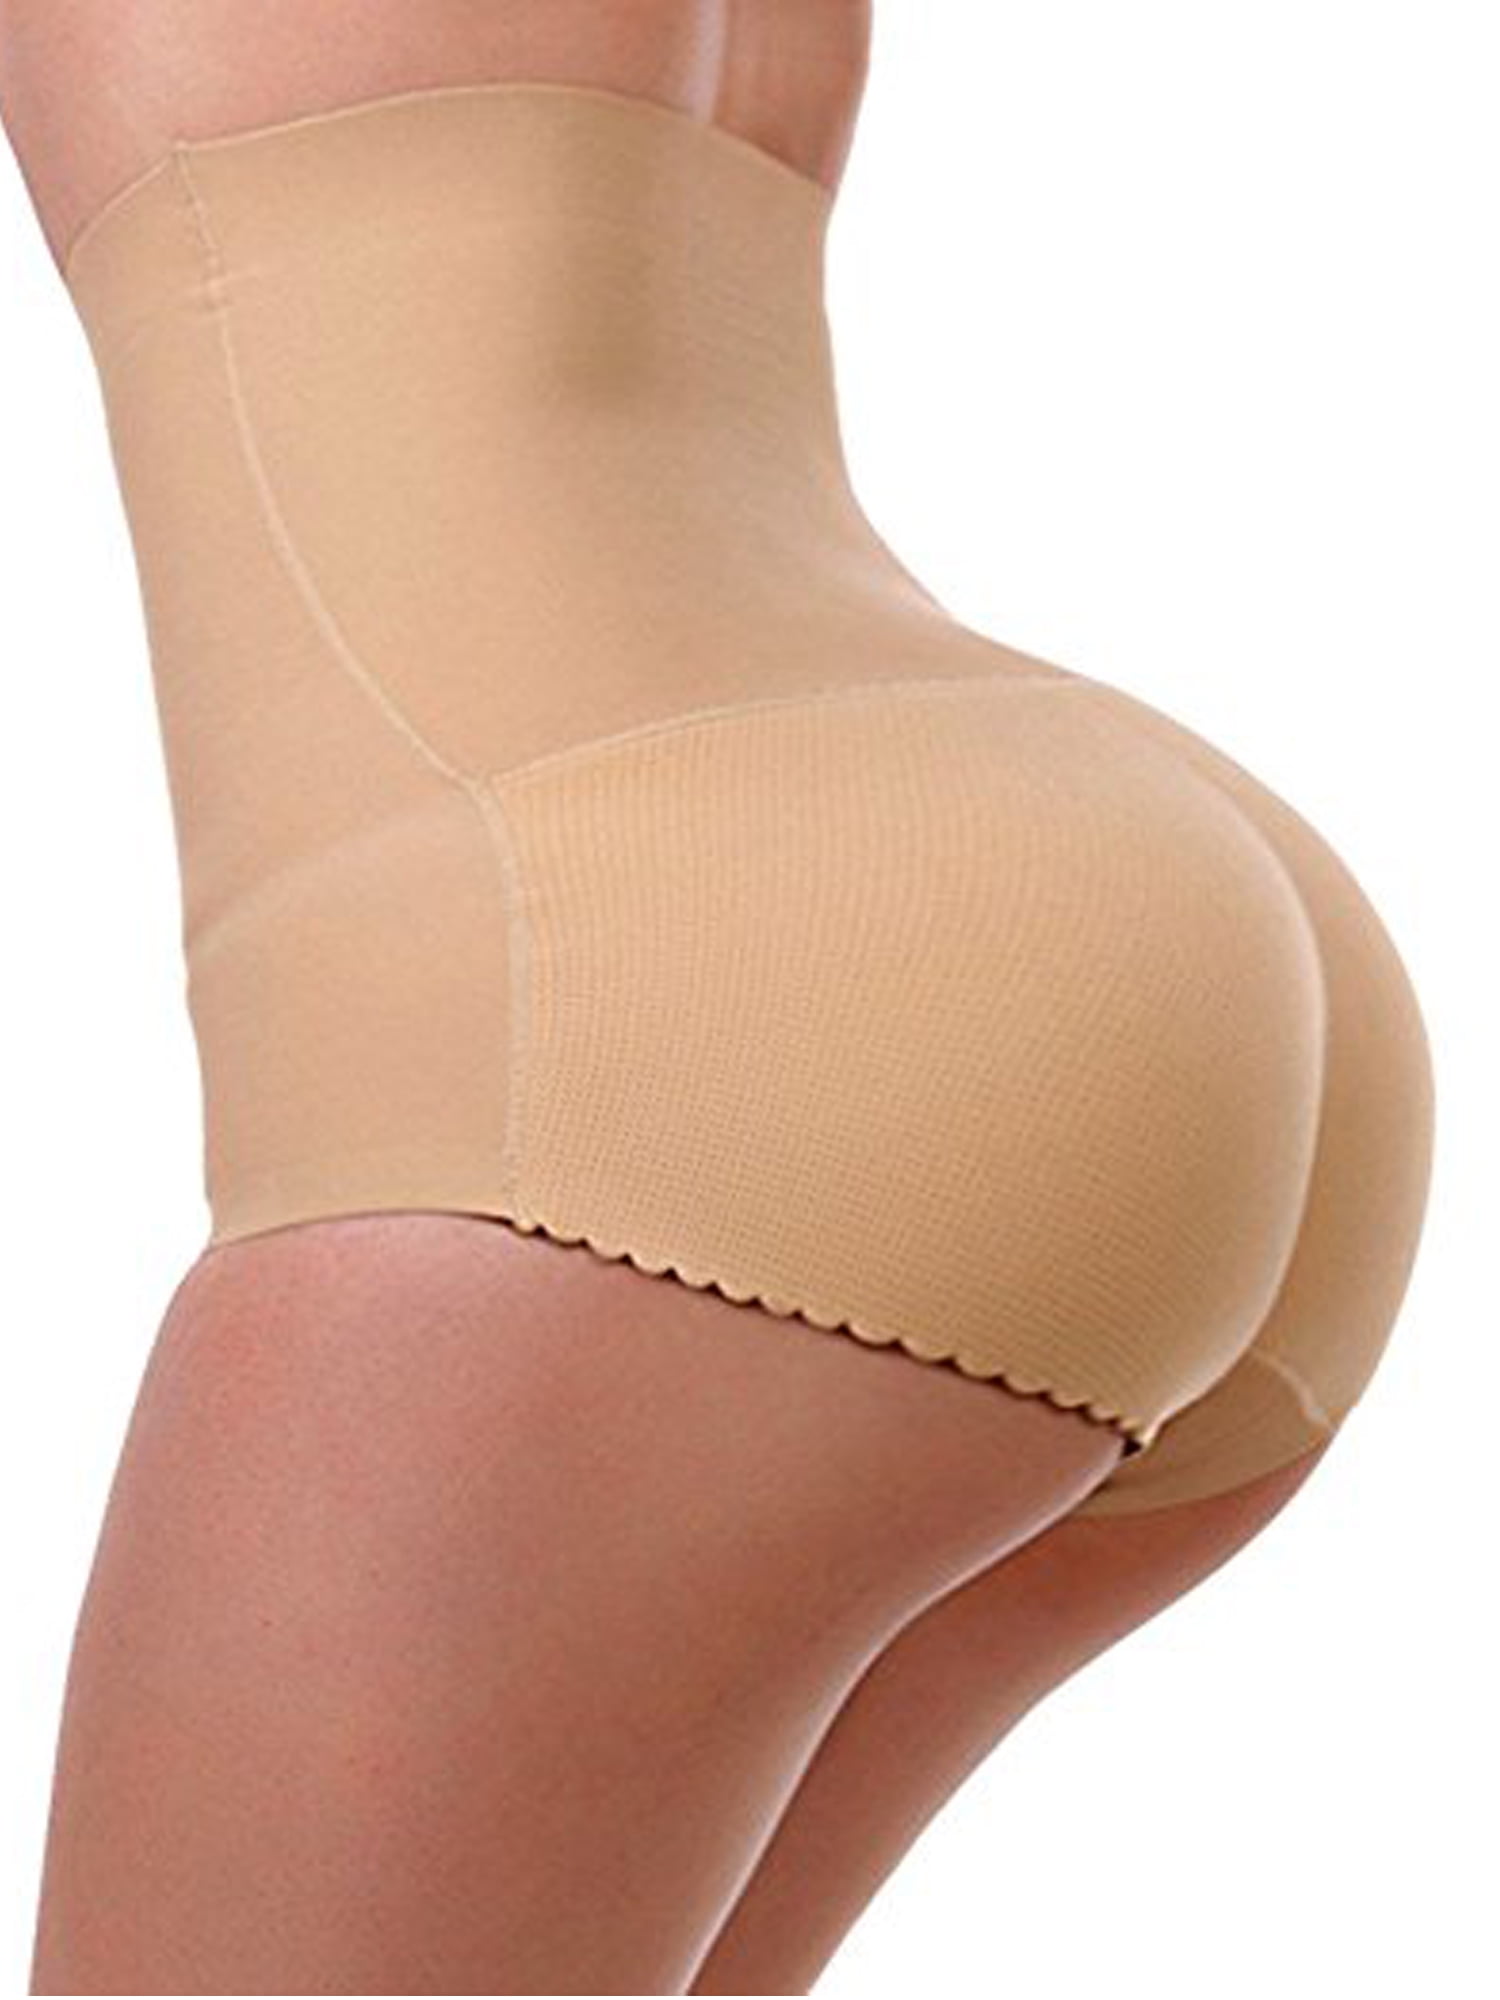 FUT Women Butt Lifter Padded Shapewear Enhancer Control Panties Body Shaper Underwear